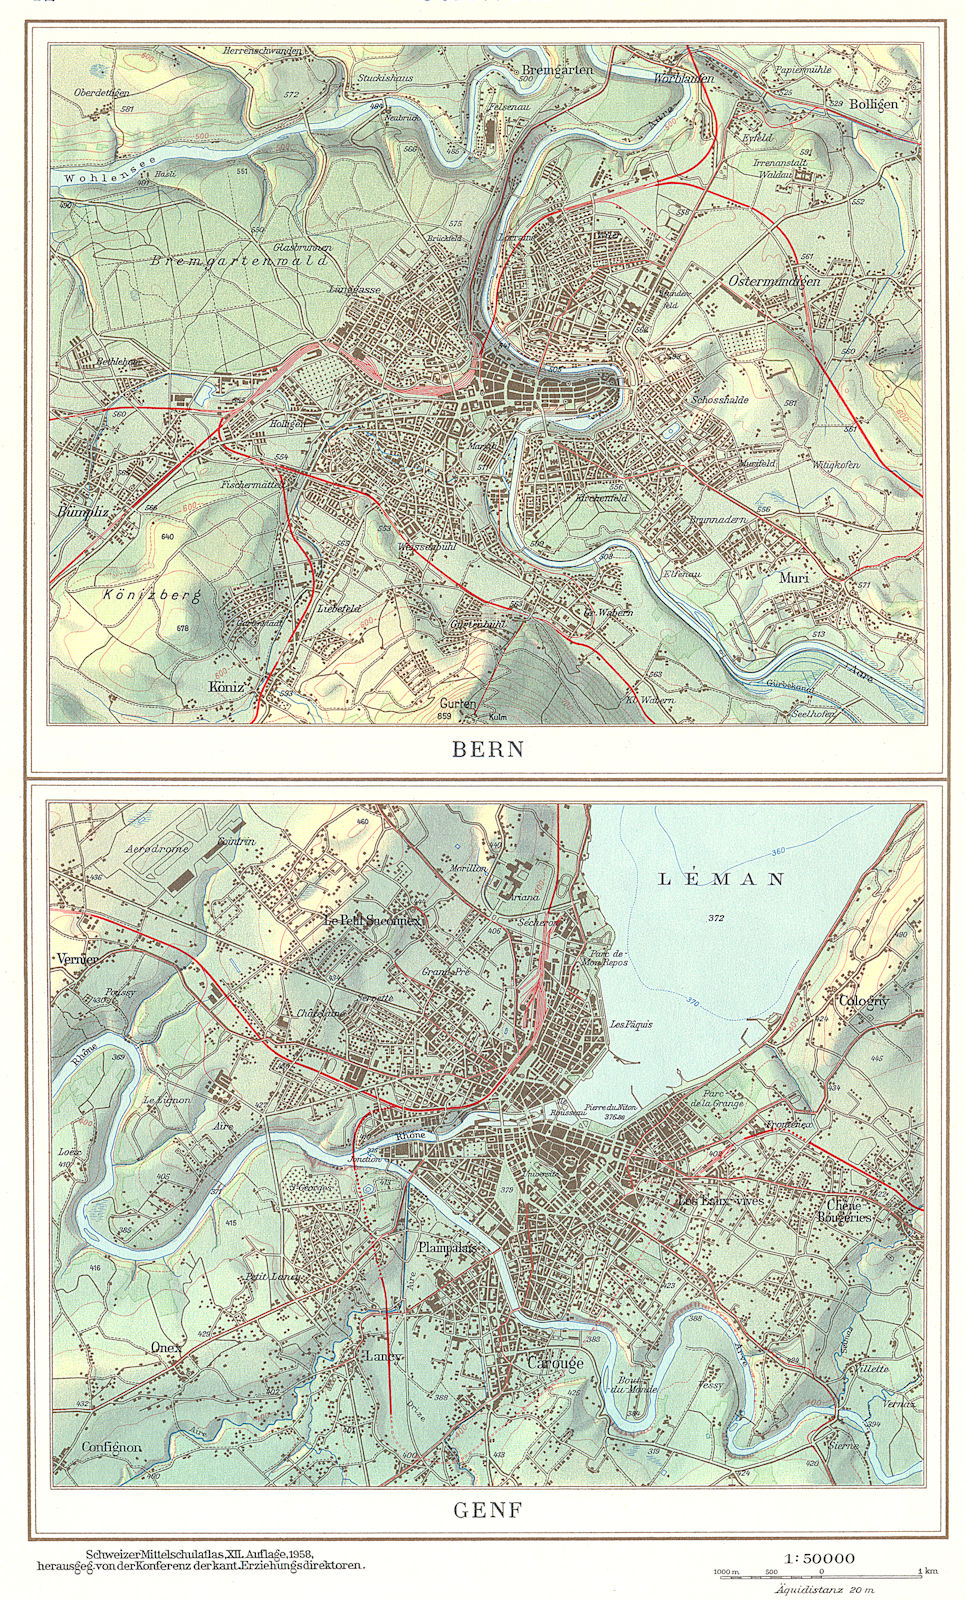 SWITZERLAND.Schweiz;Berne Bern;Genf Geneva 1958 old vintage map plan chart